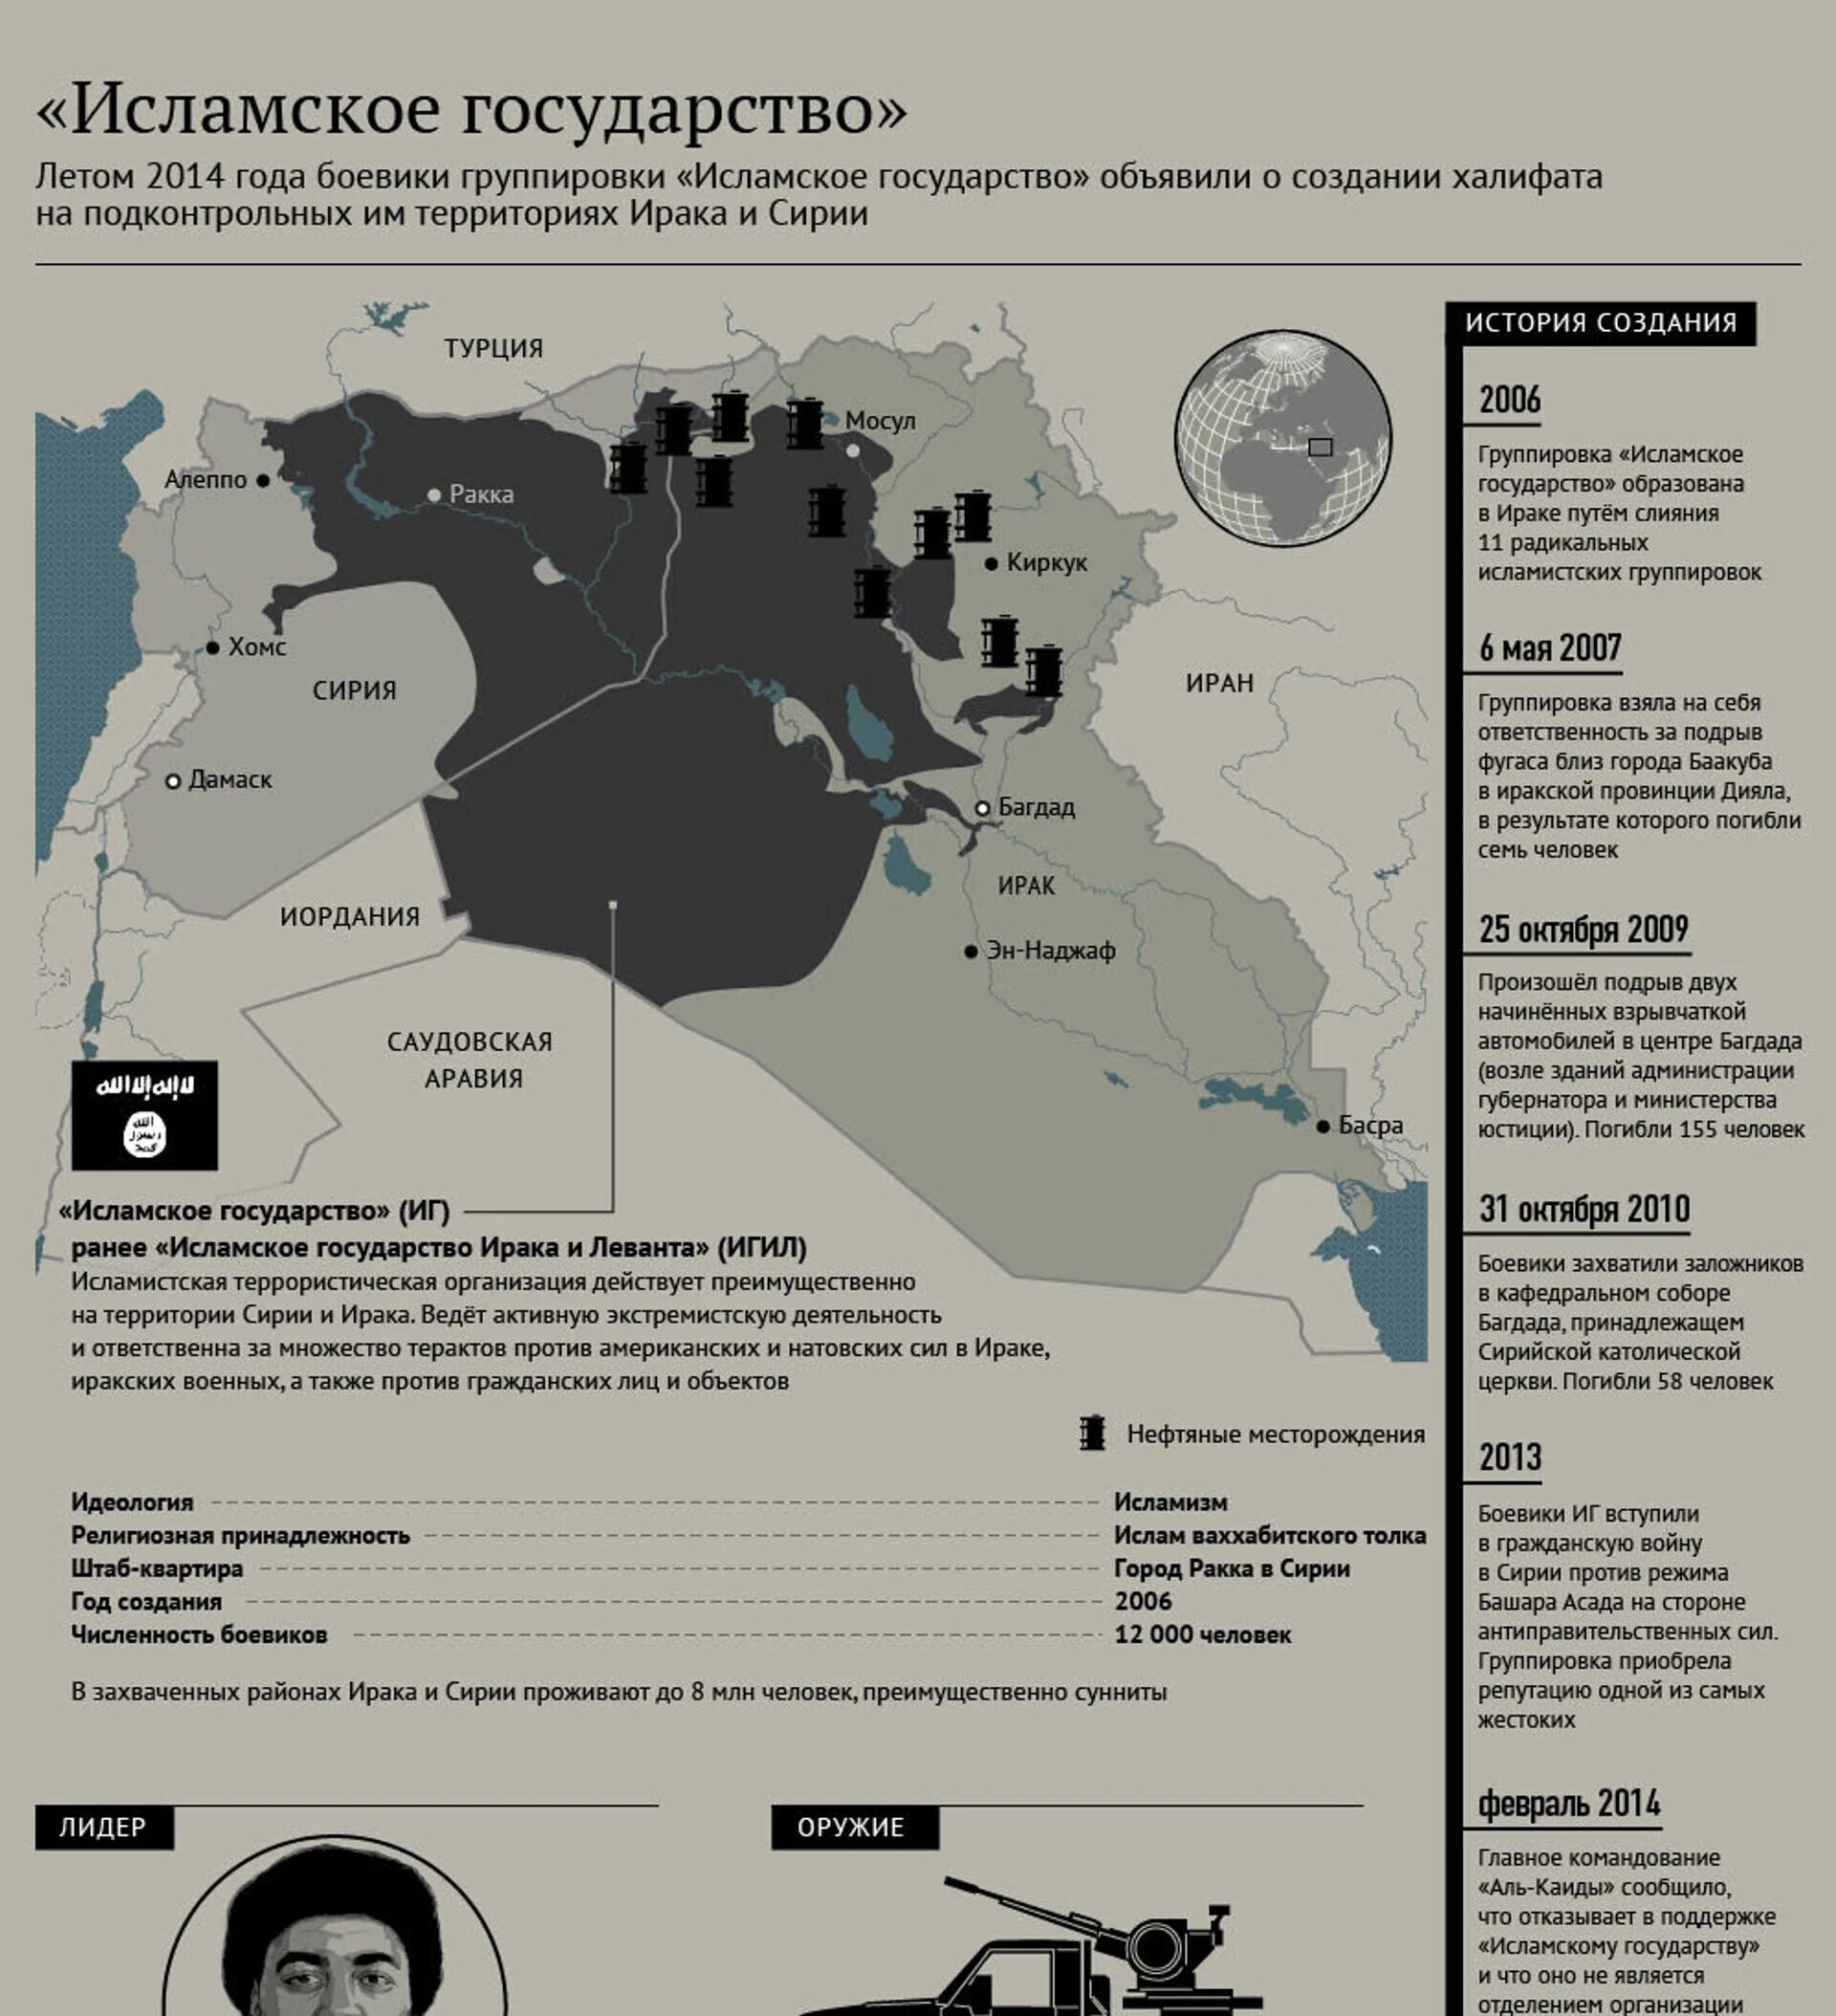 Территория ИГИЛ В Сирии. Исламское государство Ирака и Сирии карта. Исламское государство Ирака и Леванта на карте. ИГИЛ территория 2021.